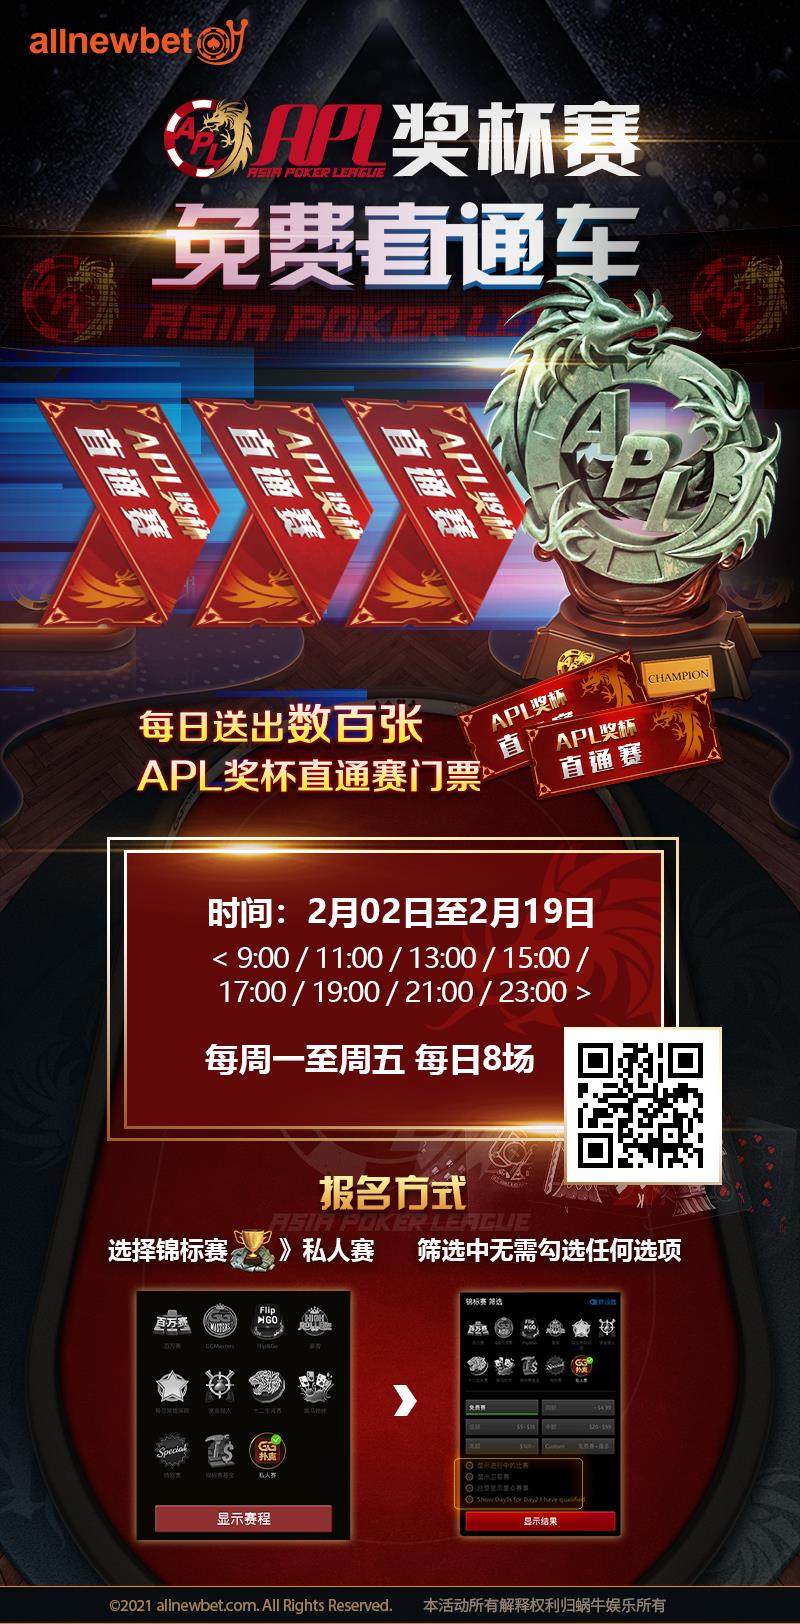 【蜗牛扑克】APL亚洲扑克联盟杯倒数3日，各路英雄奔赴八大战区，激战将起!